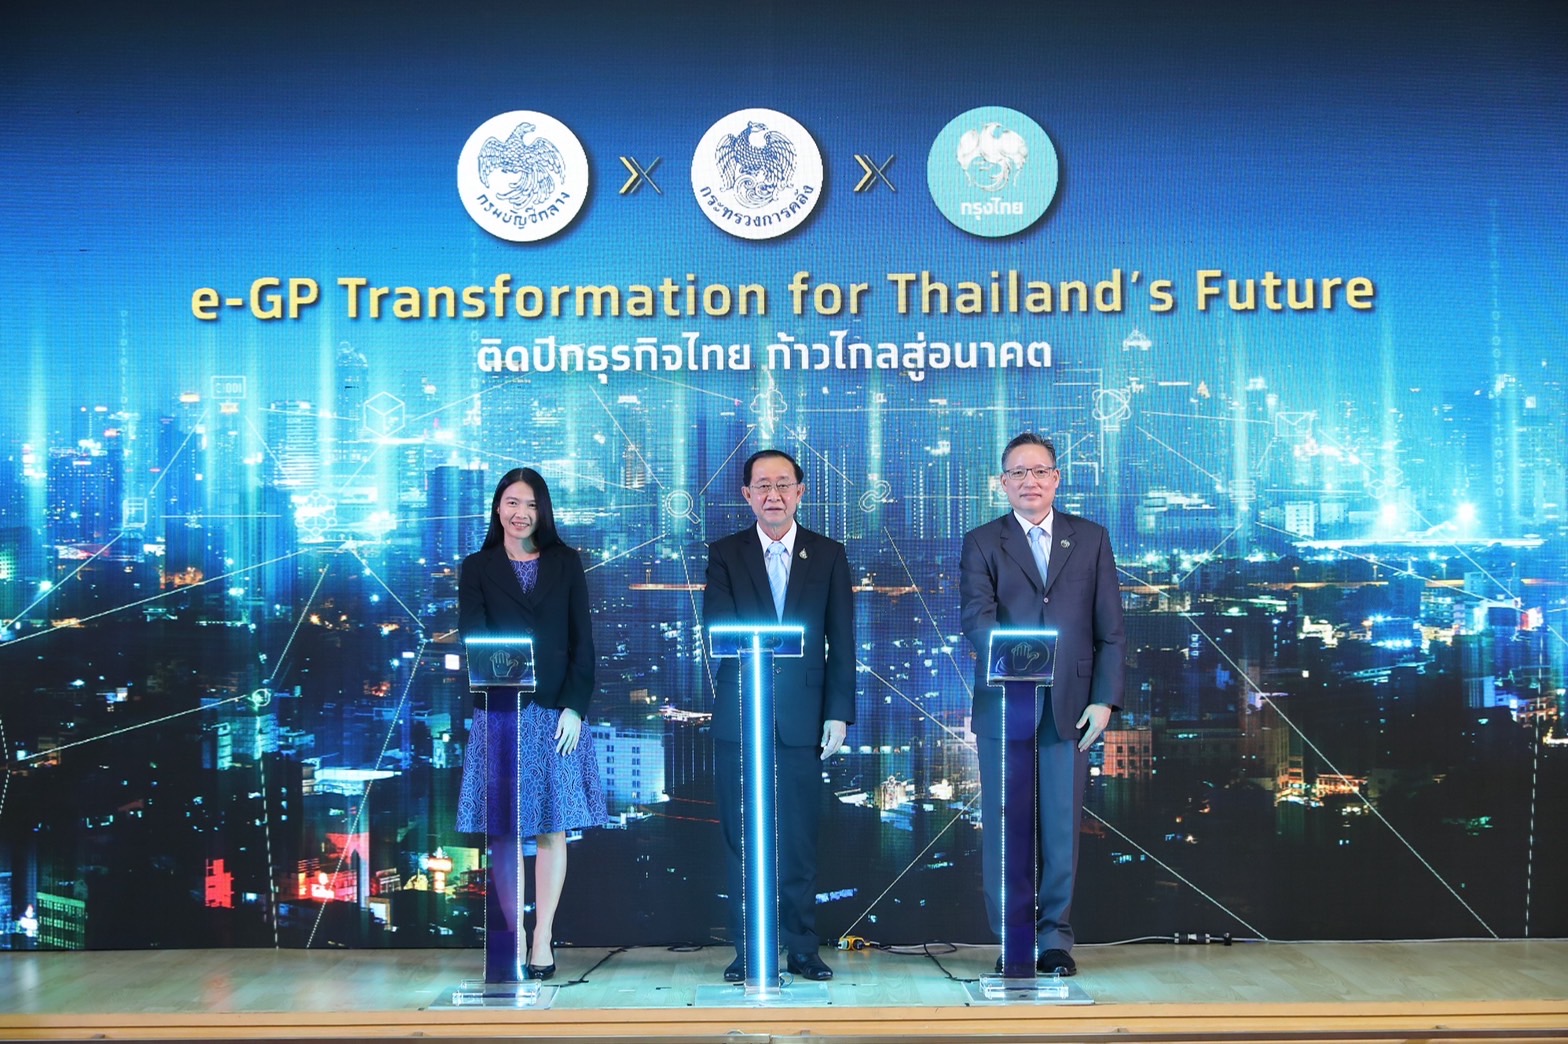 กรุงไทย จับมือกรมบัญชีกลาง เปิดตัว e-GP Transformation for Thailand’s Future ติดปีกธุรกิจไทย ก้าวไกลสู่อนาคต